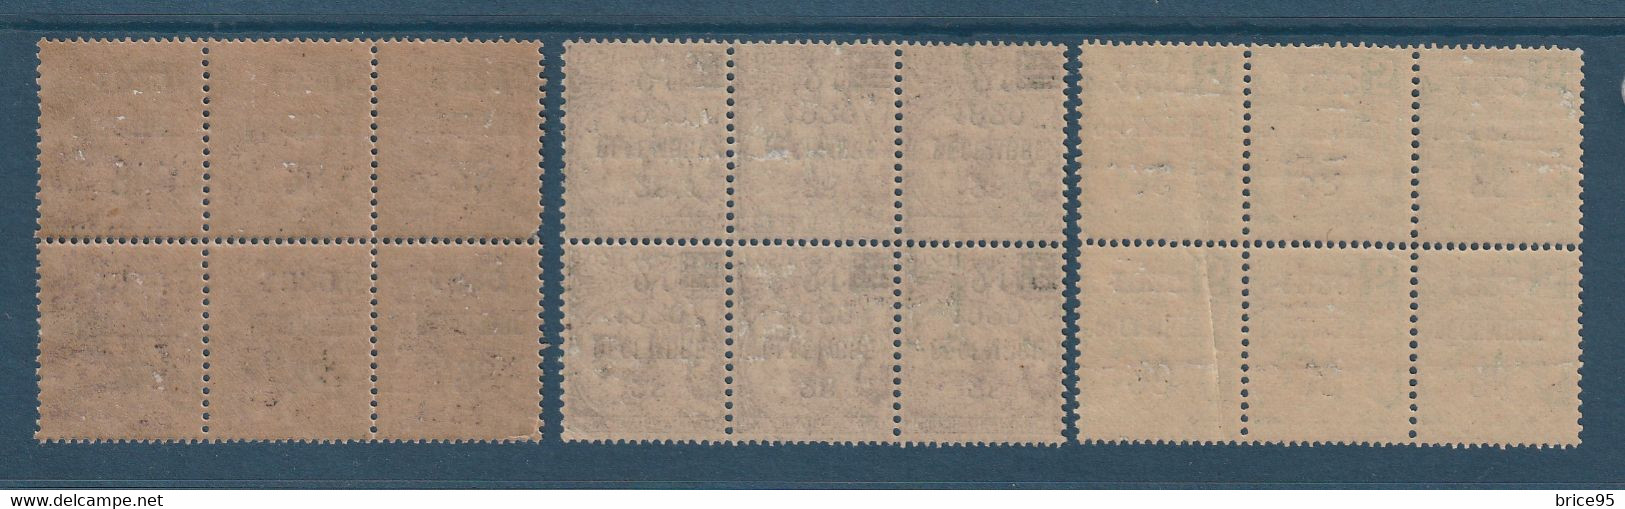 ⭐ Monaco - YT N° 48 à 50 - Neuf Avec Legère Adhérence - 1921 ⭐ - Unused Stamps